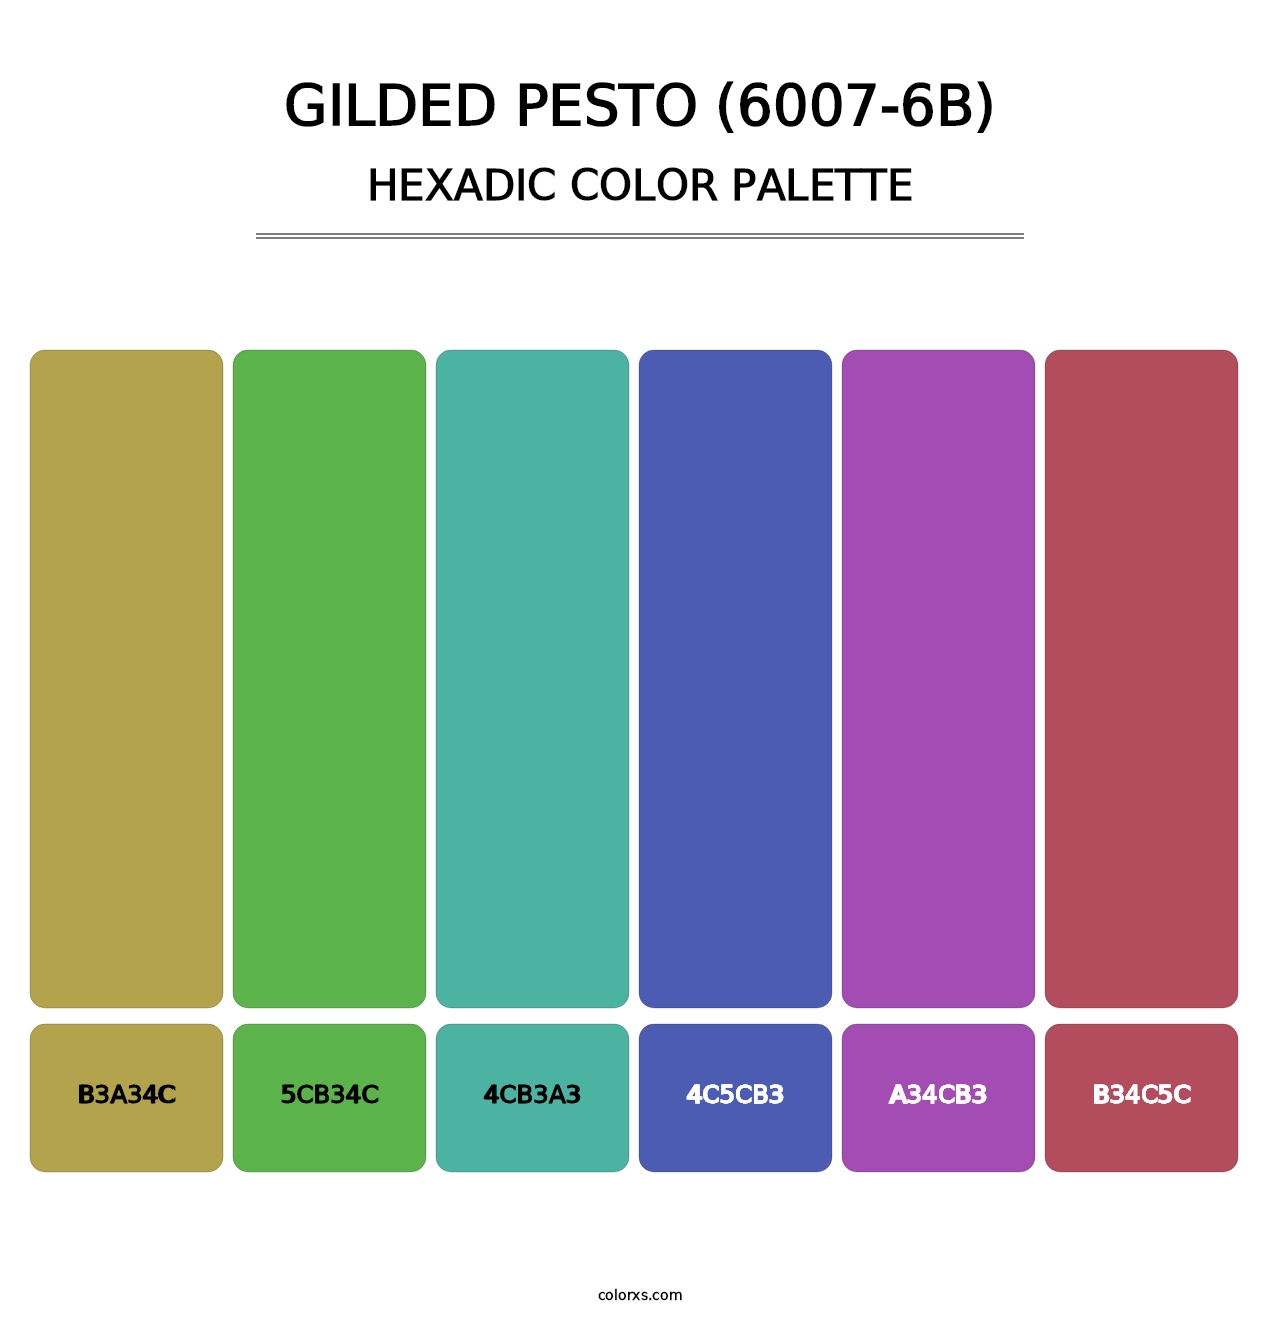 Gilded Pesto (6007-6B) - Hexadic Color Palette